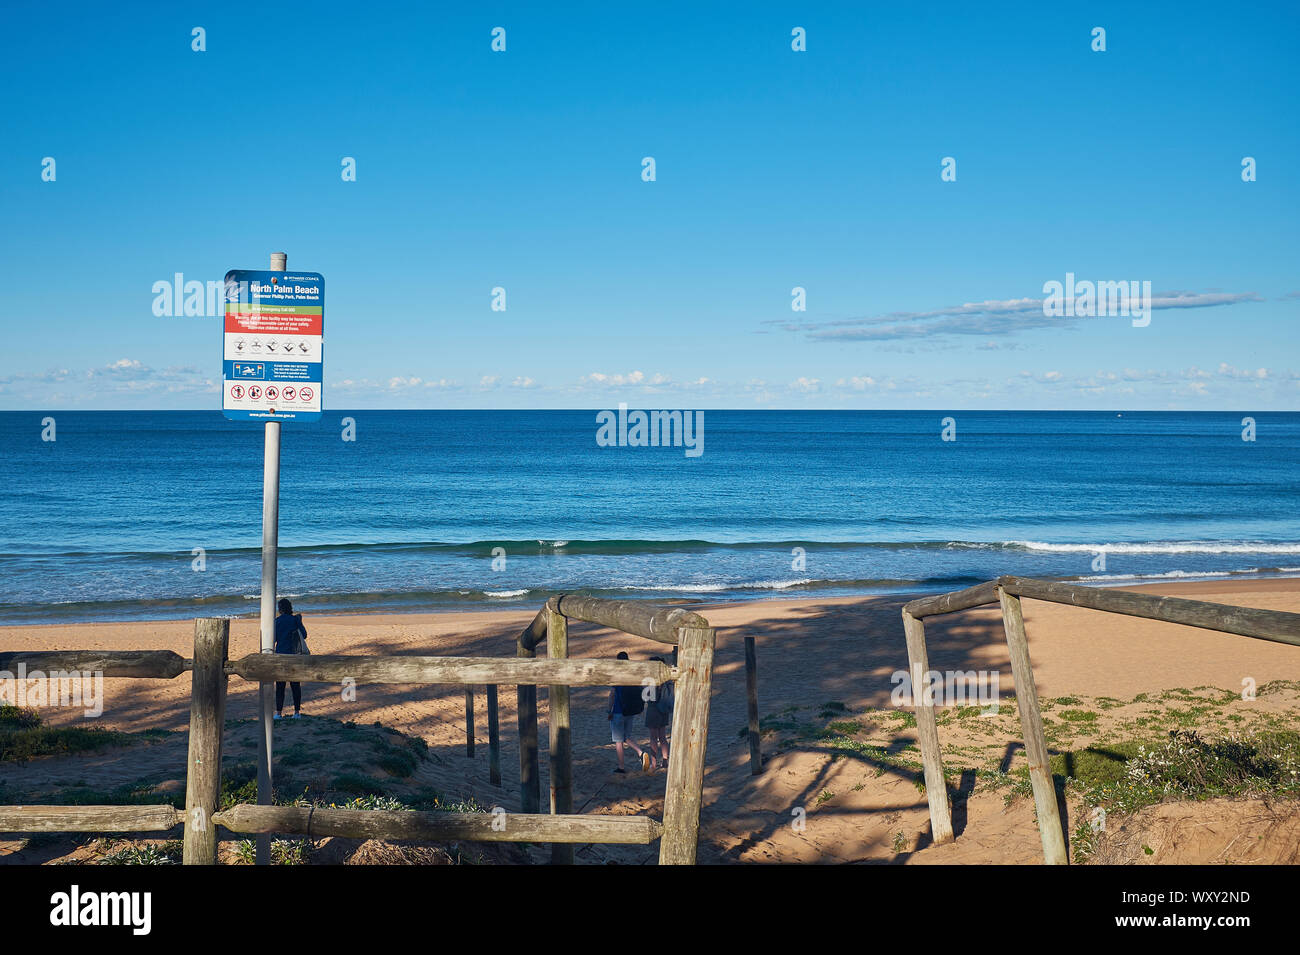 Eingang zum Palm Beach mit einem Warnschild an einem sonnigen Tag mit einem klaren blauen Himmel, New South Wales, Australien Stockfoto